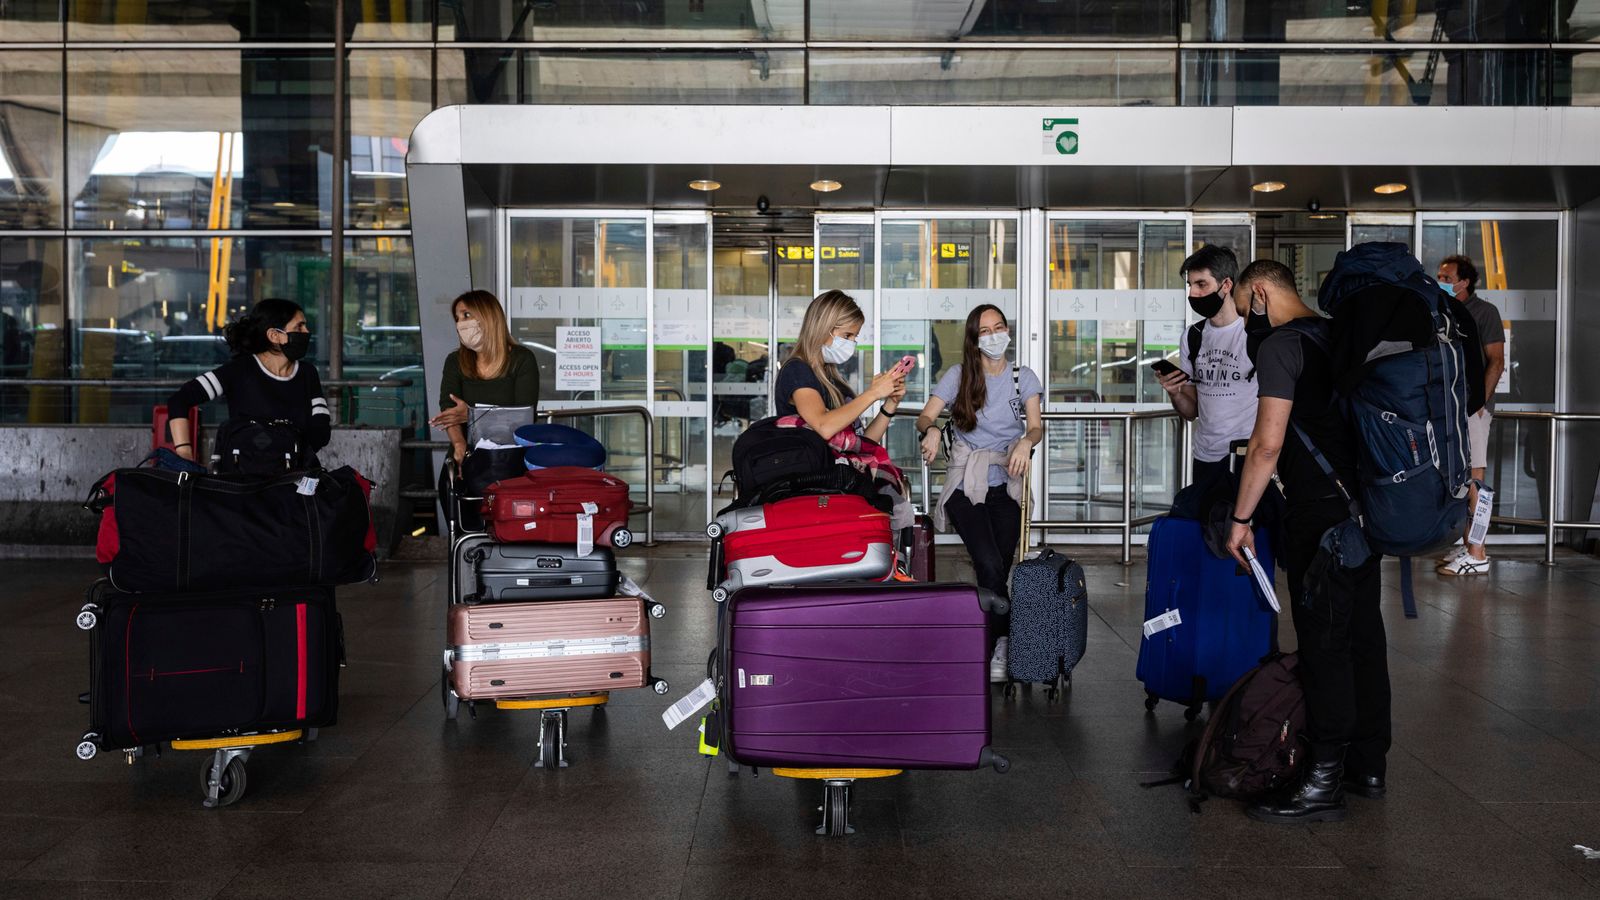 COVID-19: Obligatorisches Tragen von Gesichtsmasken auf Flughäfen und auf europäischen Flügen „nicht mehr empfohlen“ |  Weltnachrichten